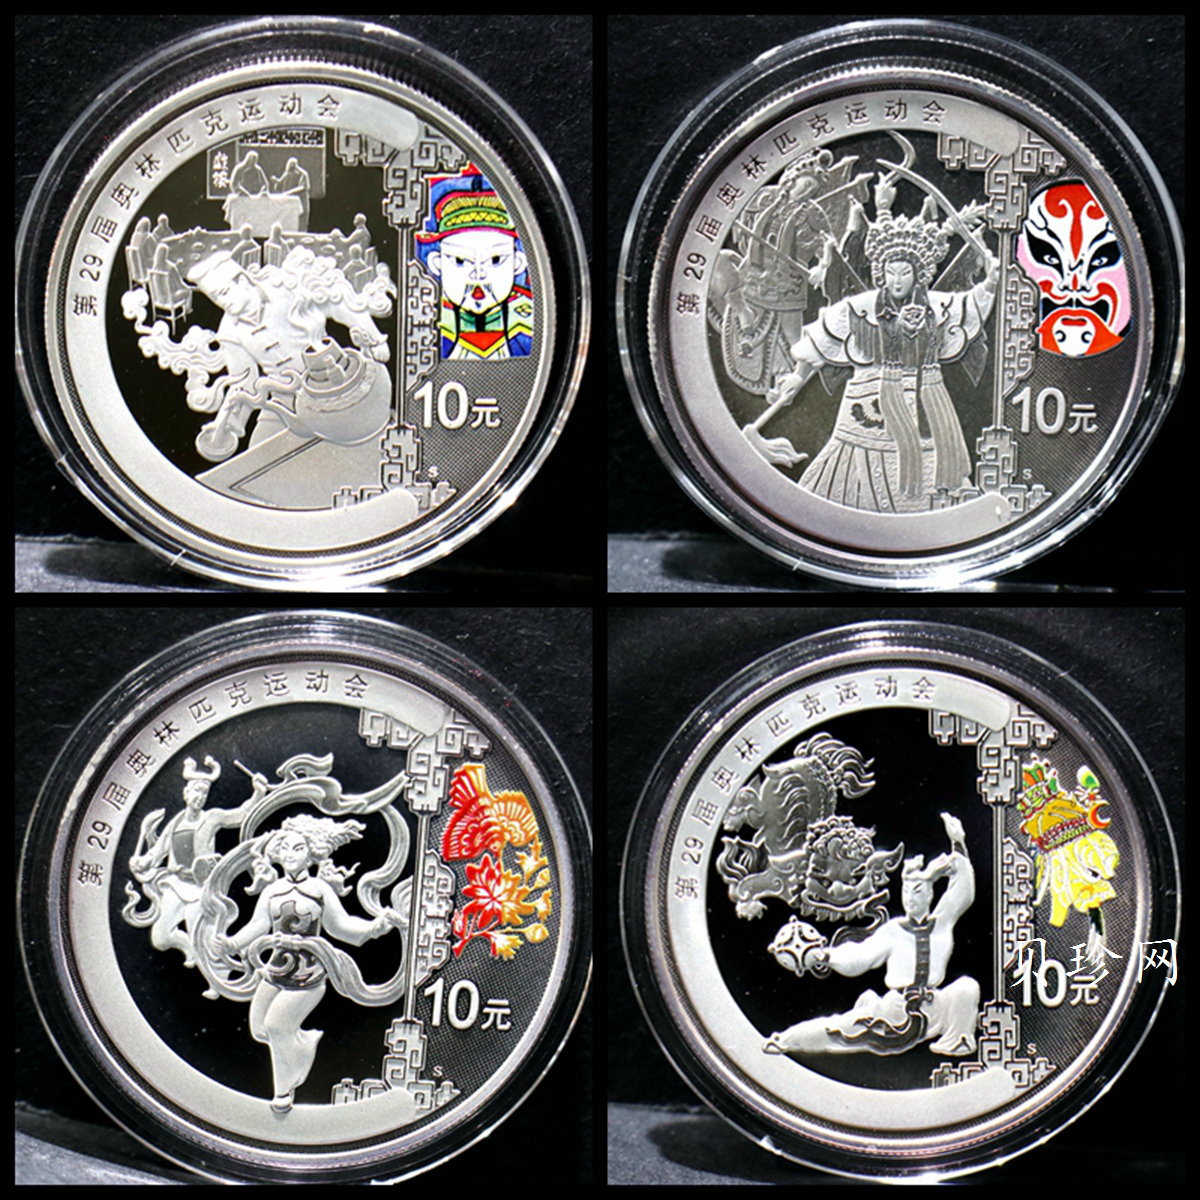 【089160】2008年第29届奥林匹克运动会第3组1盎司精制彩银币4枚一套